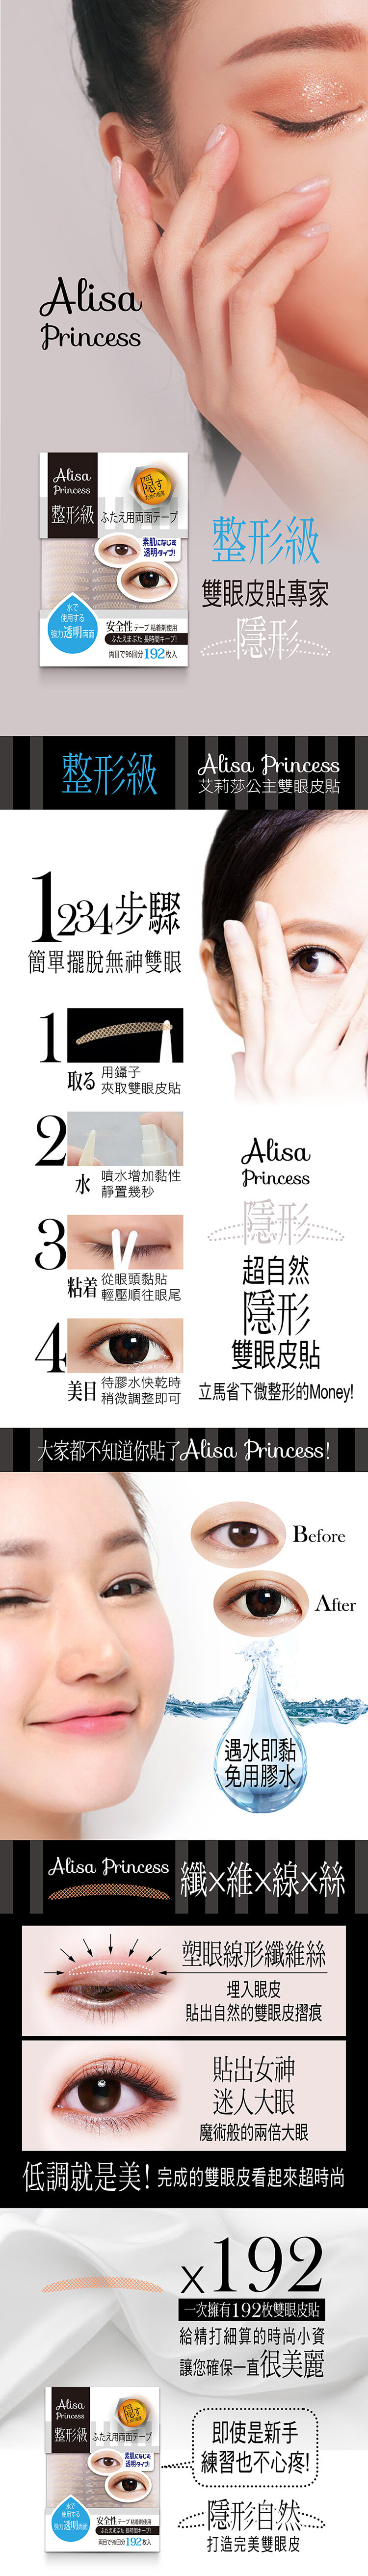 艾莉莎公主雙眼皮貼_整形級_產品詳情圖